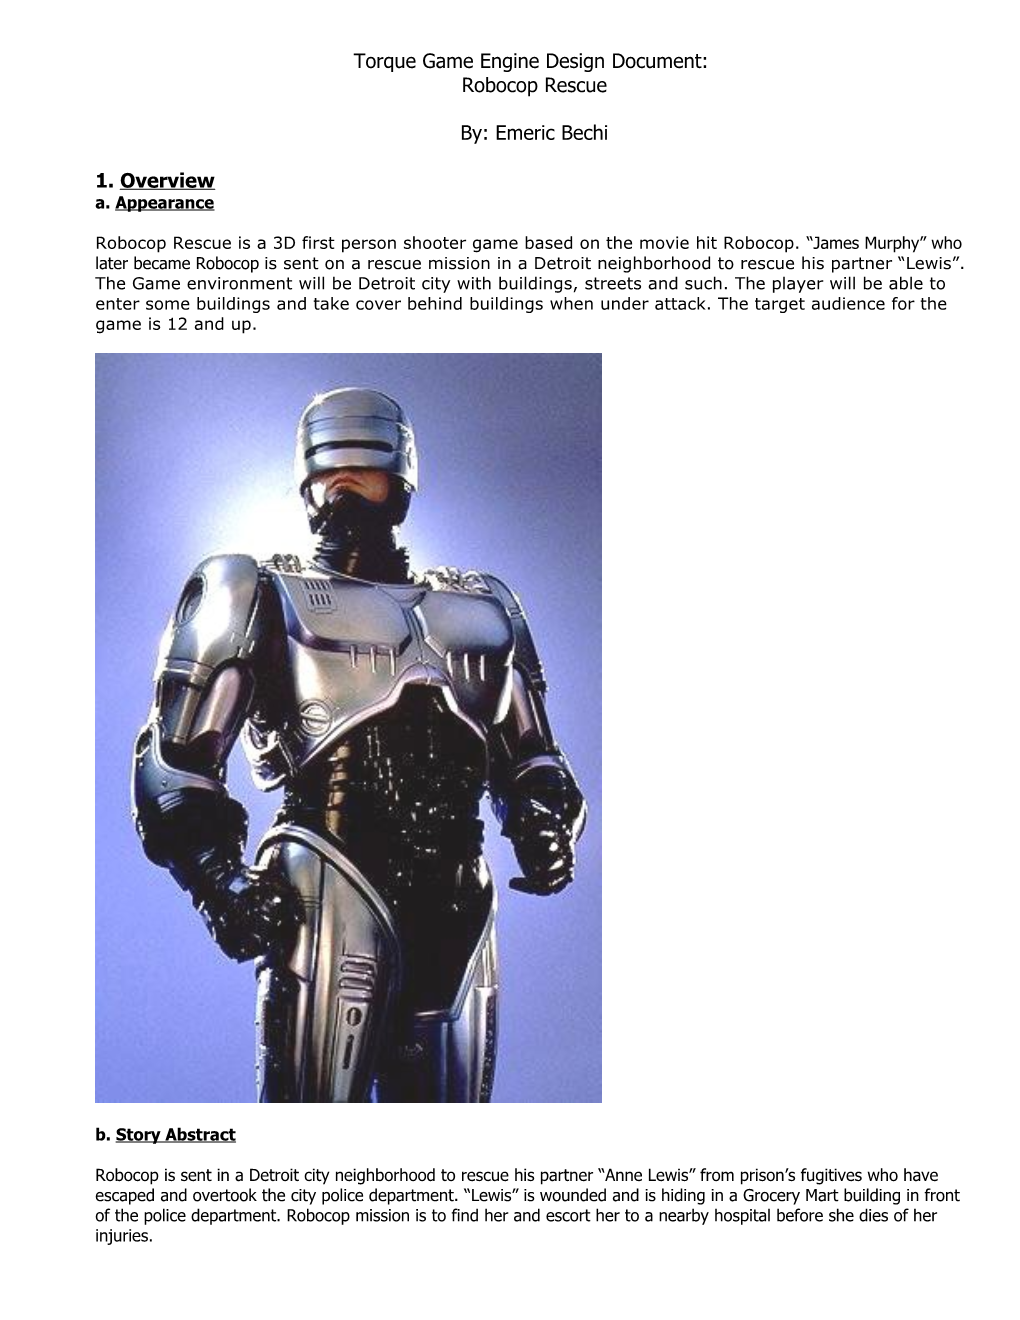 Torque Game Engine Design Document: Robocop Rescue